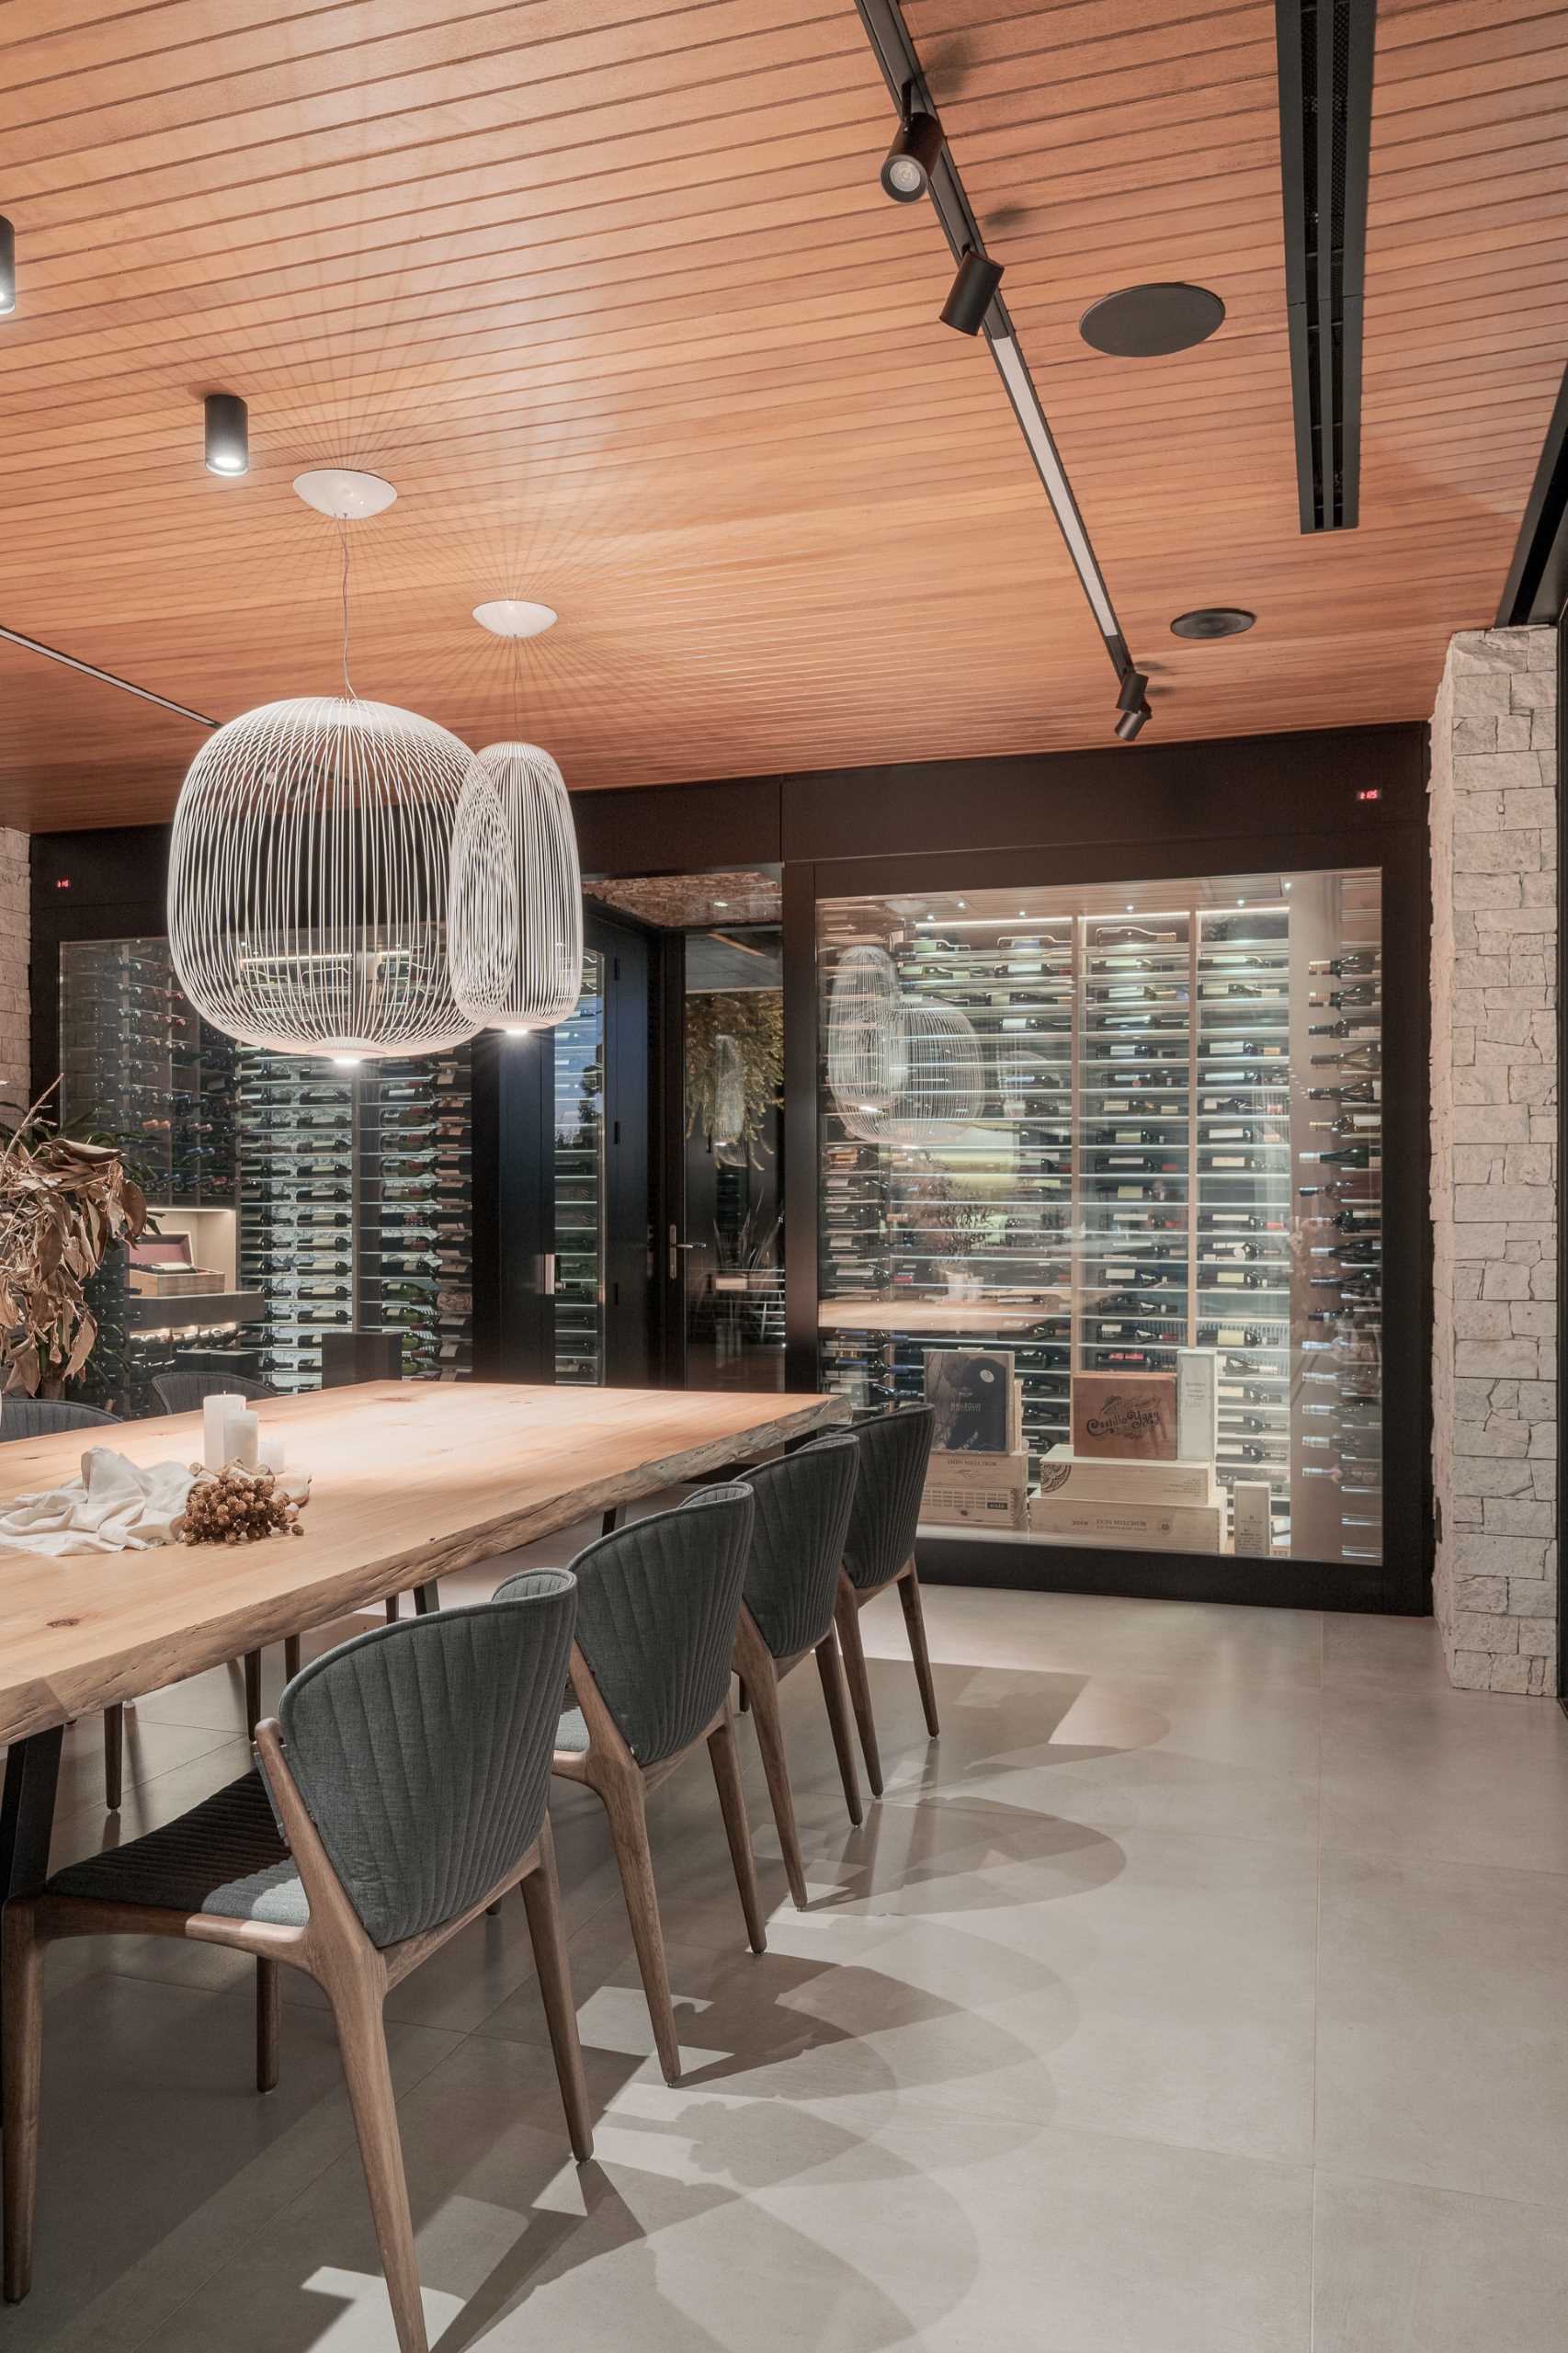 یک ناهارخوری مدرن با یک میز چوبی بلند که به جزیره آشپزخانه متصل است.  صندلی های خا،تری تیره یک ،صر متضاد را ارائه می دهند، در حالی که دیوار انتهای میز به یک جفت انبار شراب محصور شده شیشه ای اختصاص داده شده است.